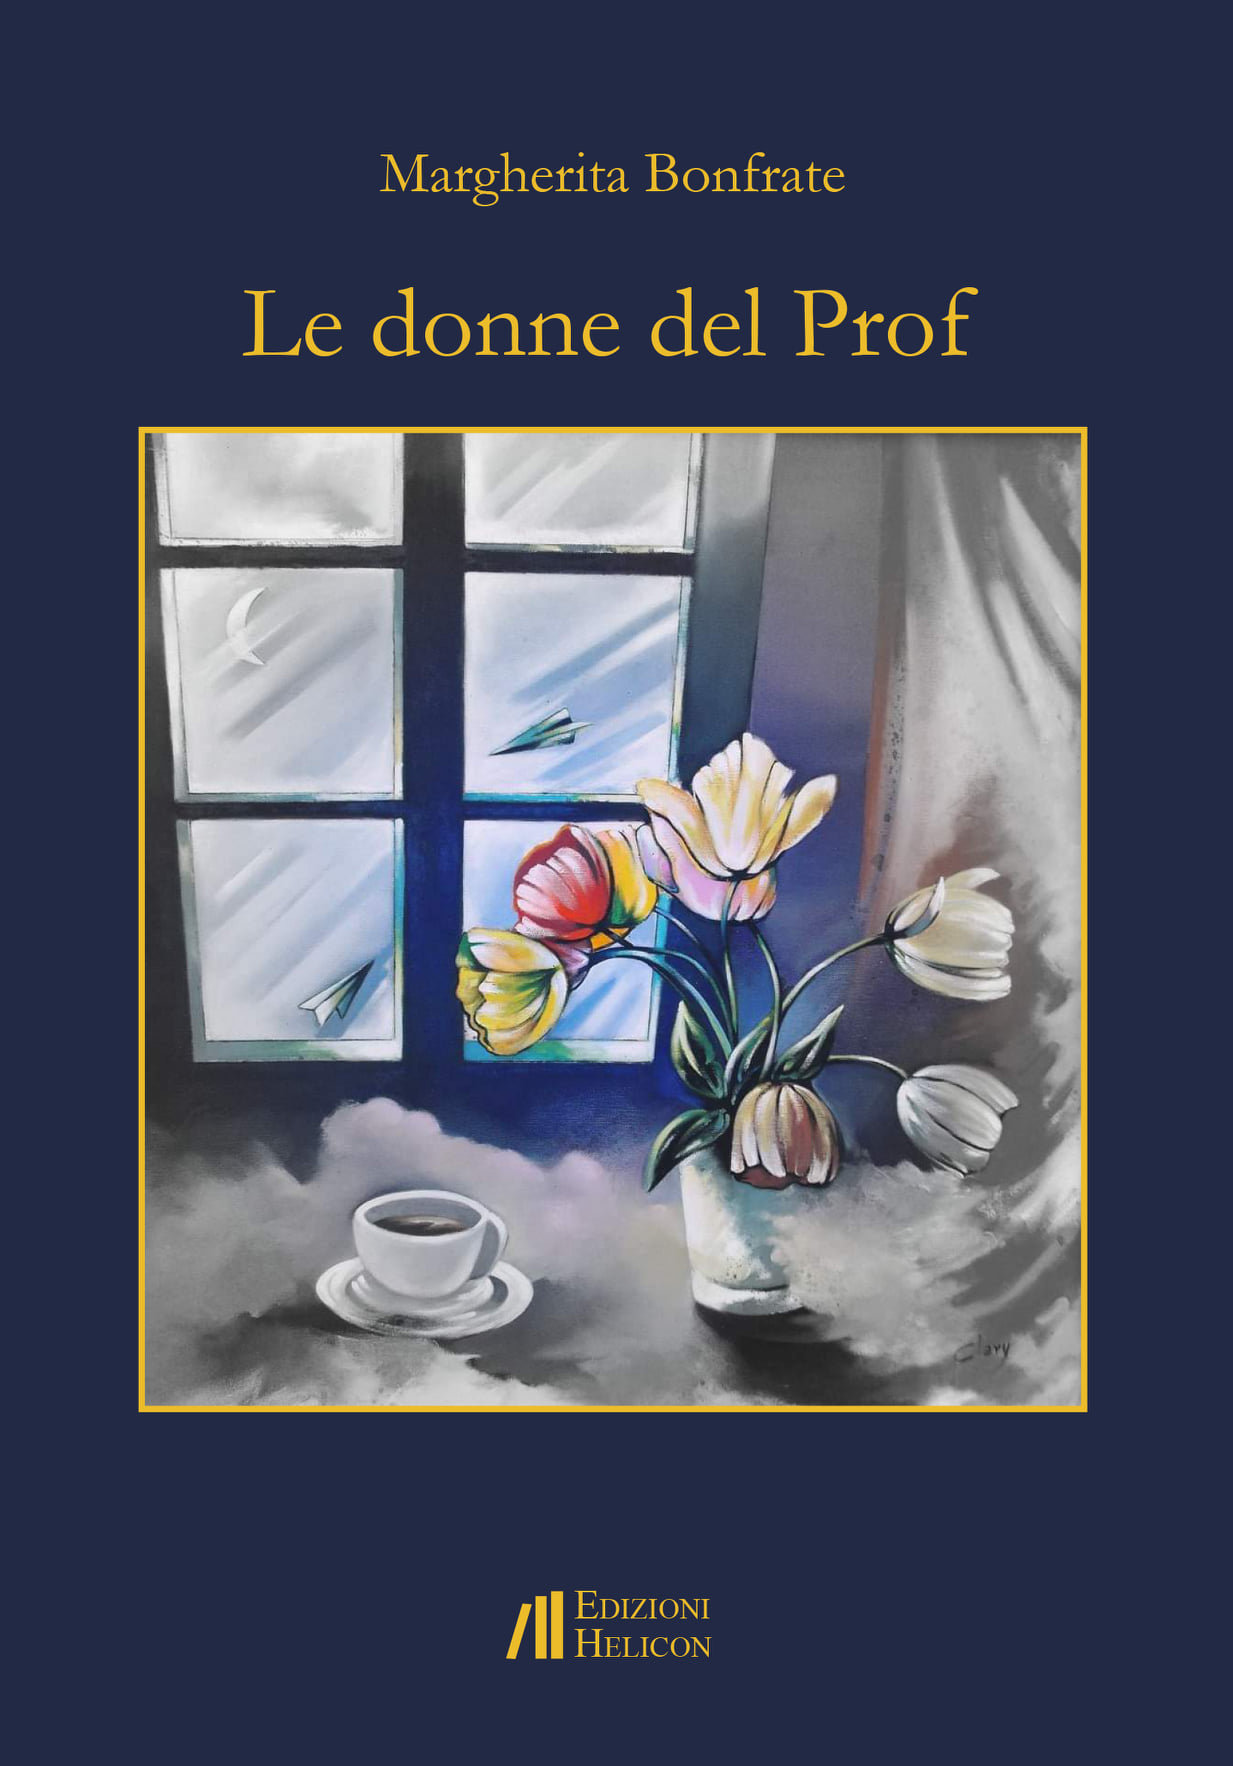 Il libro di Margherita Bonfrate: “Le donne del Prof”